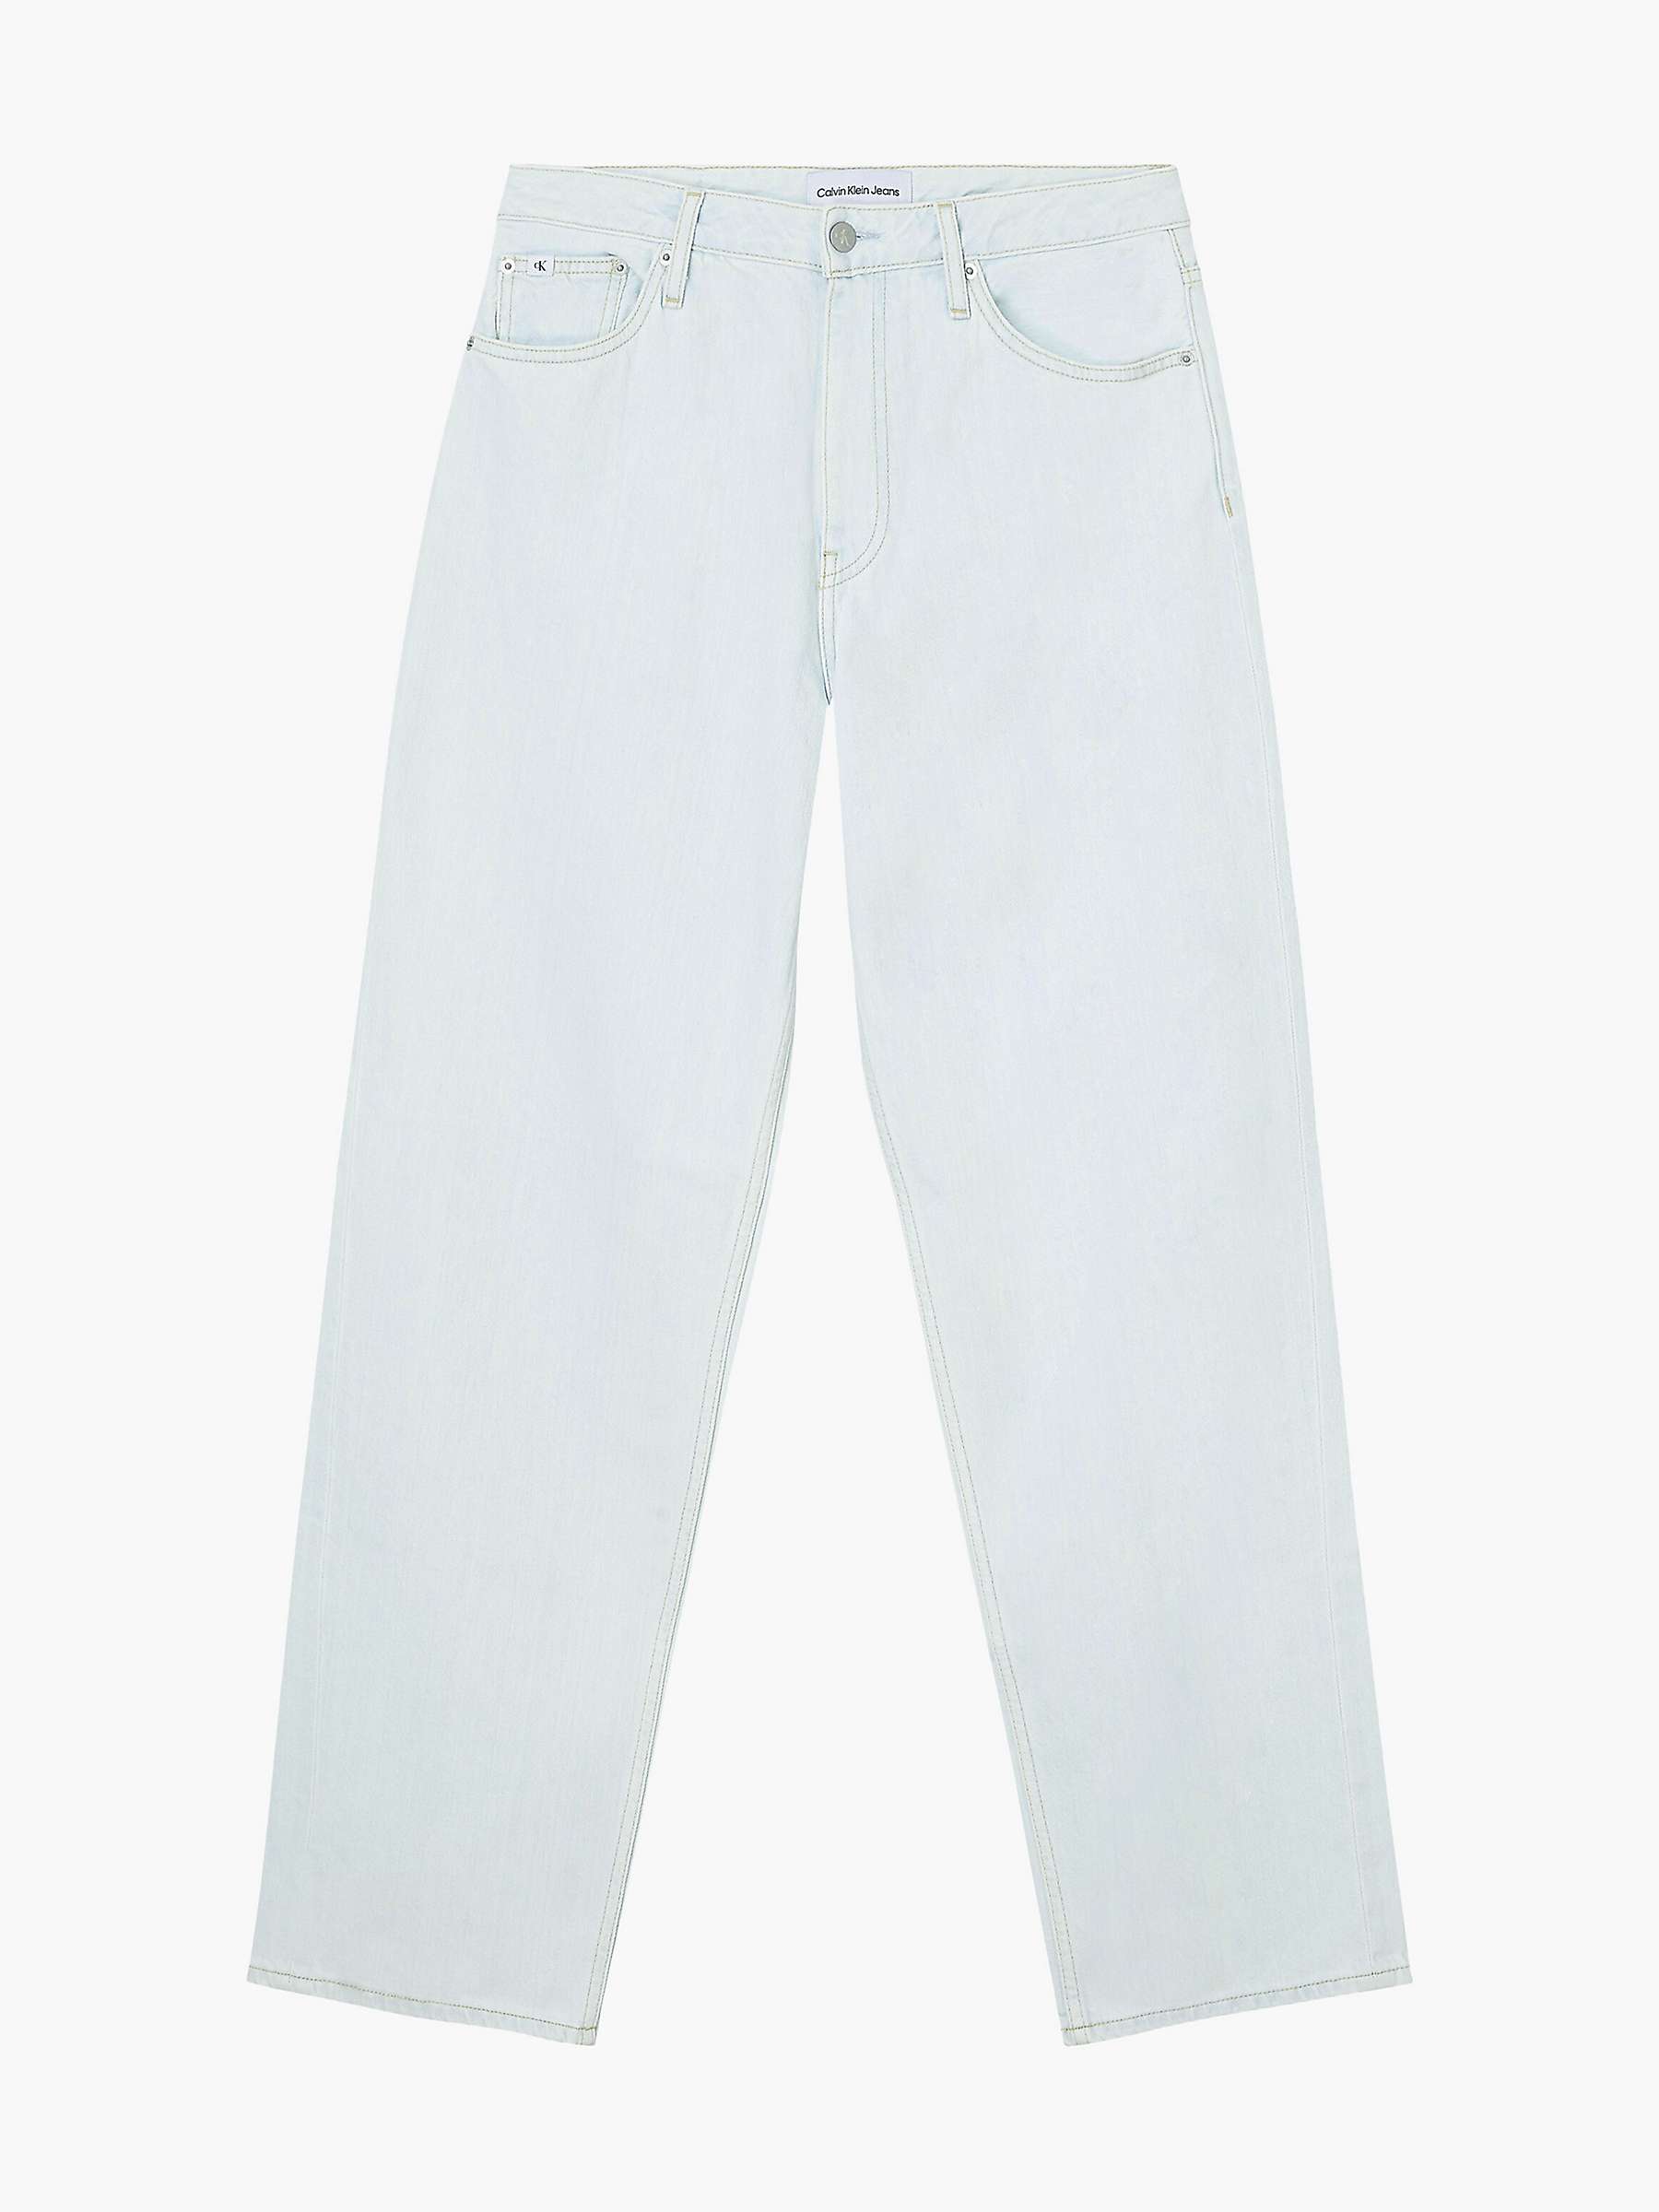 Buy Calvin Klein 90s Straight Leg Jeans, Denim Light Online at johnlewis.com